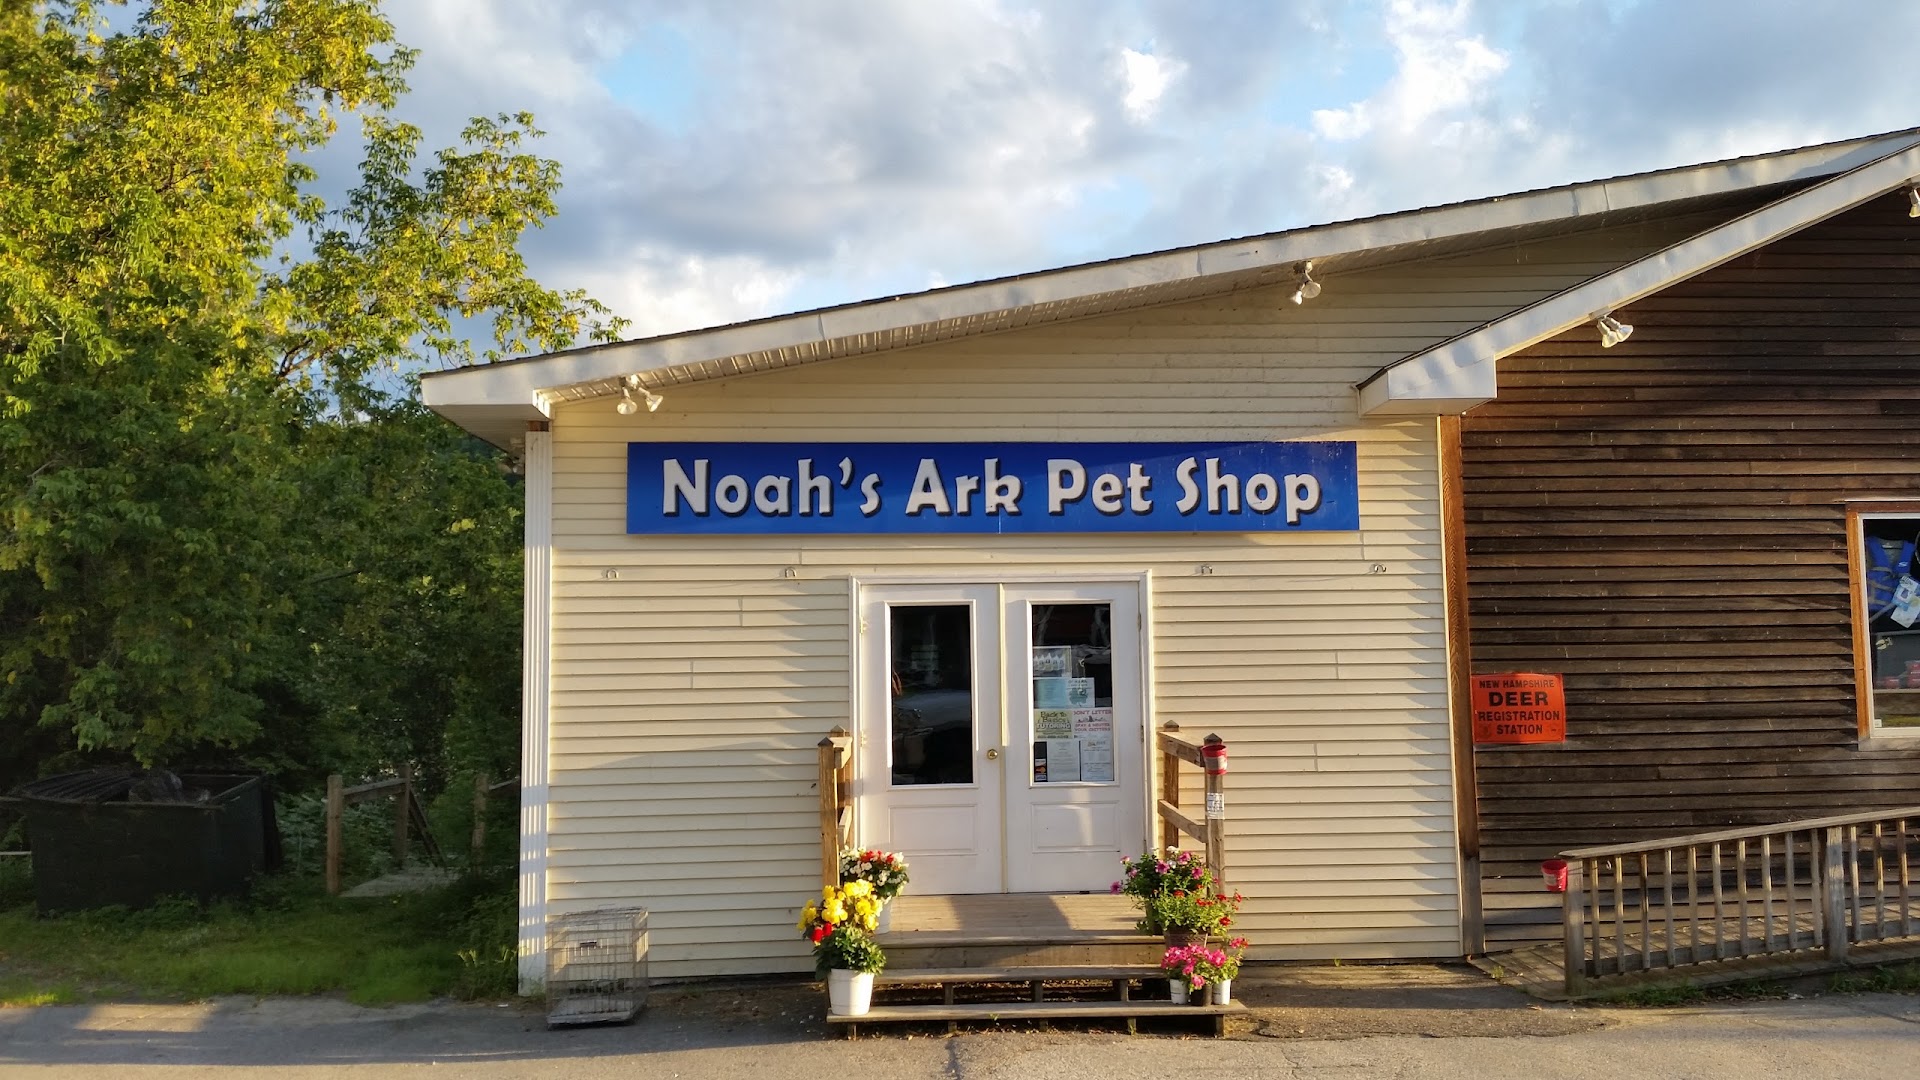 Noah's Ark Pet Shop